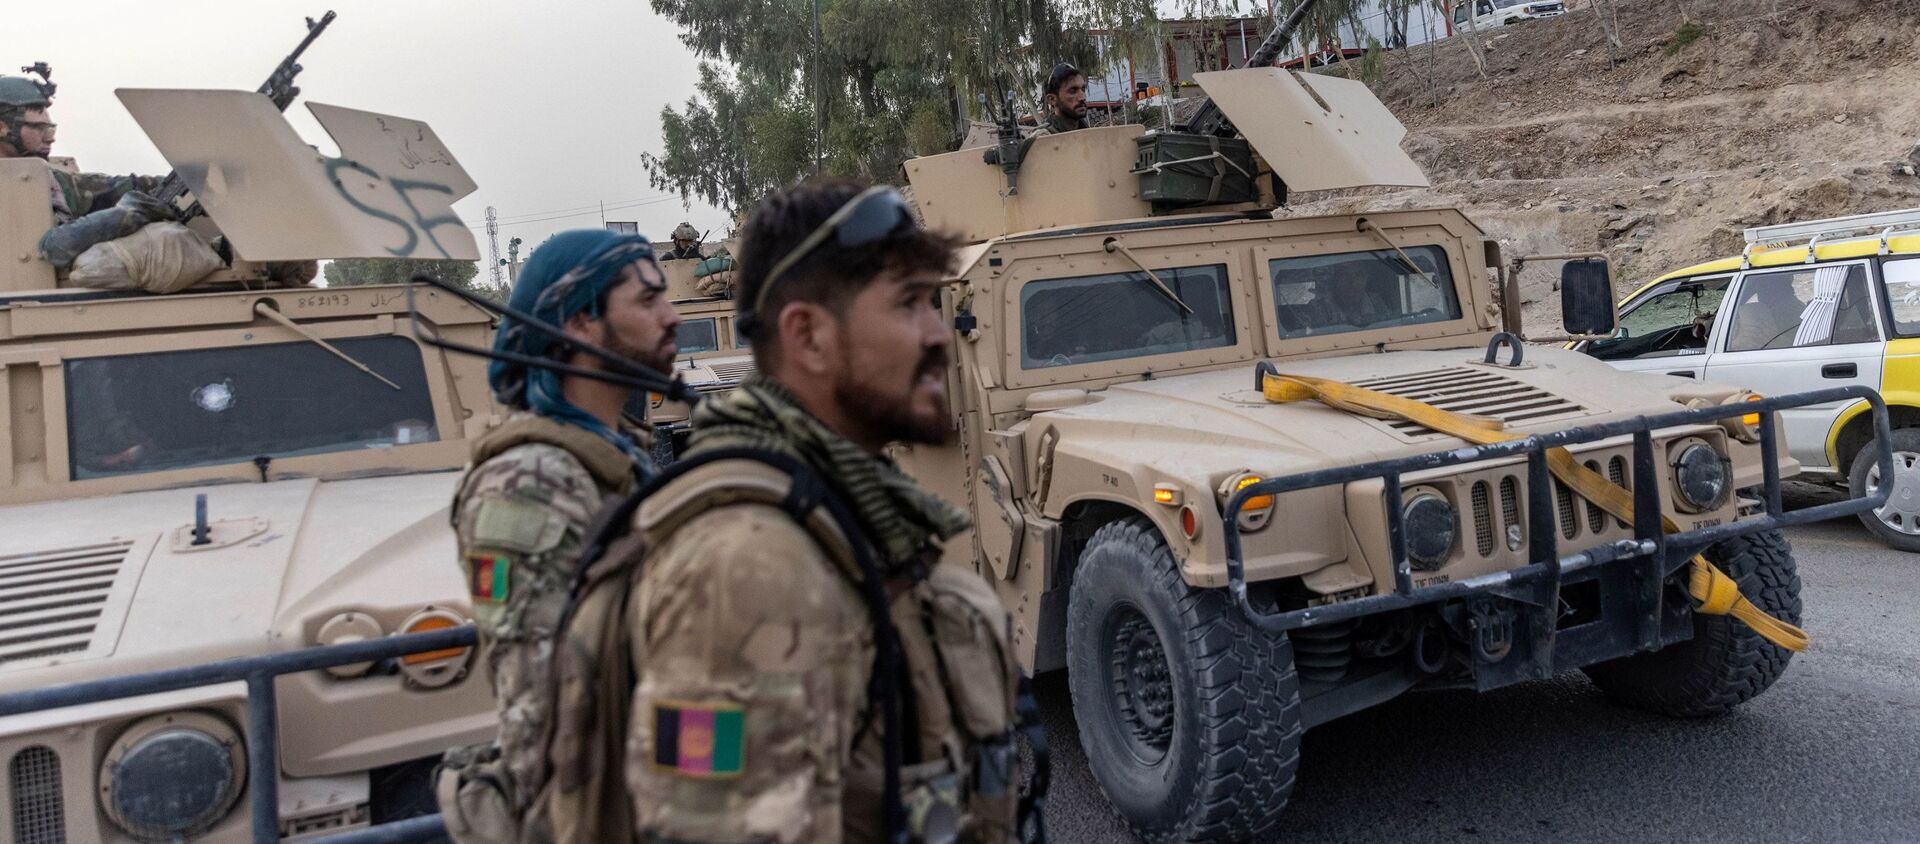 Một đoàn xe của Lực lượng đặc biệt Afghanistan được nhìn thấy trong nhiệm vụ giải cứu một cảnh sát bị bao vây tại một trạm kiểm soát do Taliban bao vây, ở tỉnh Kandahar, Afghanistan, ngày 13 tháng 7 năm 2021 - Sputnik Việt Nam, 1920, 01.08.2021